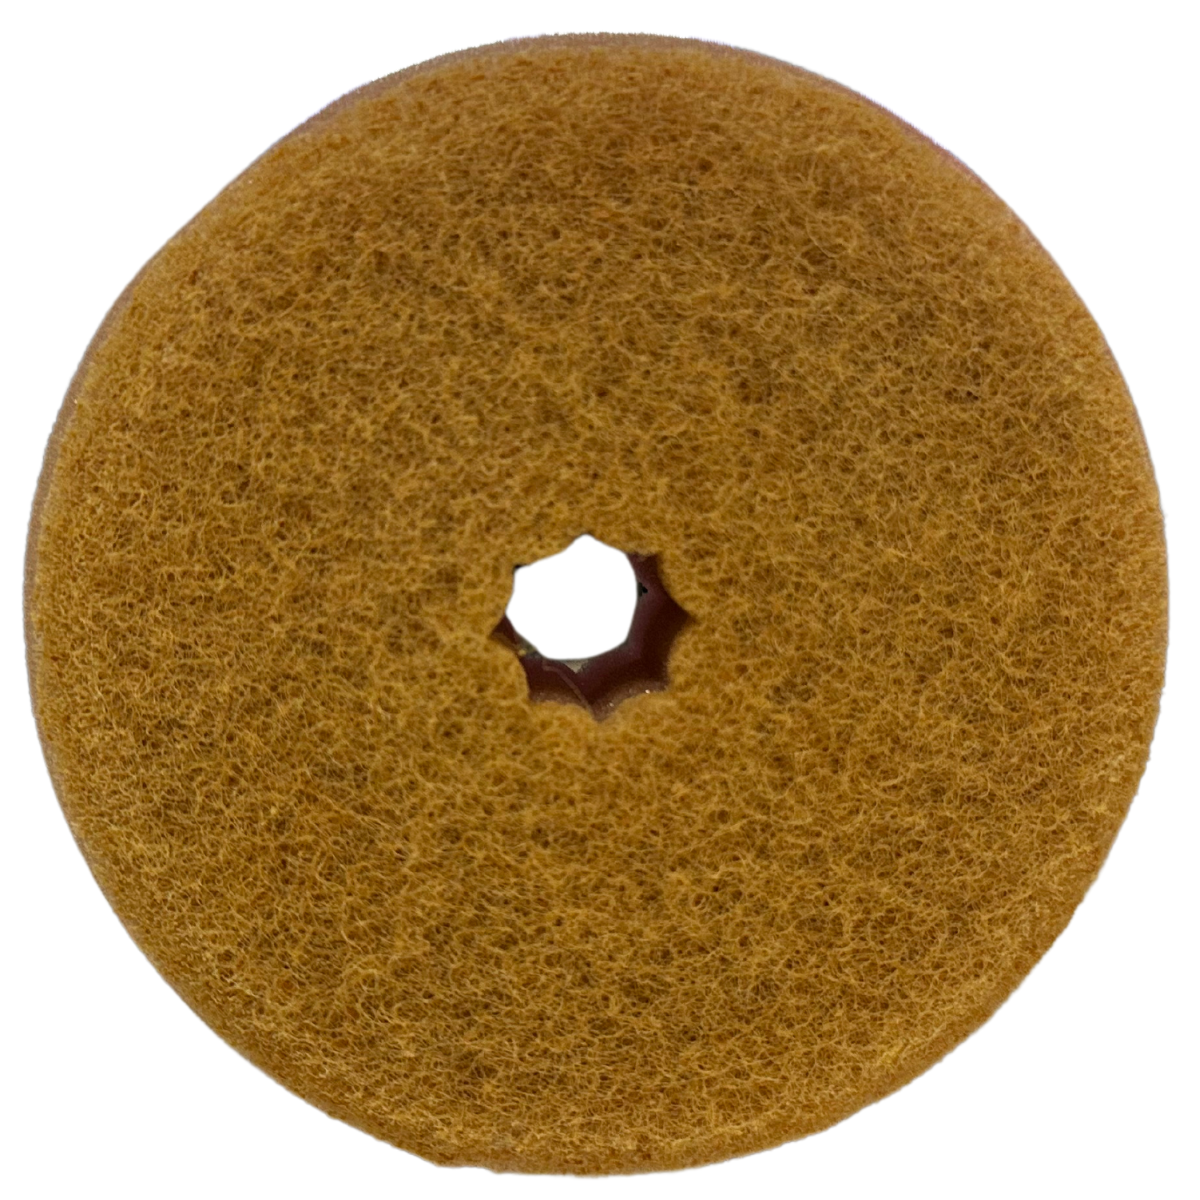 Donut Tack Sponge in White